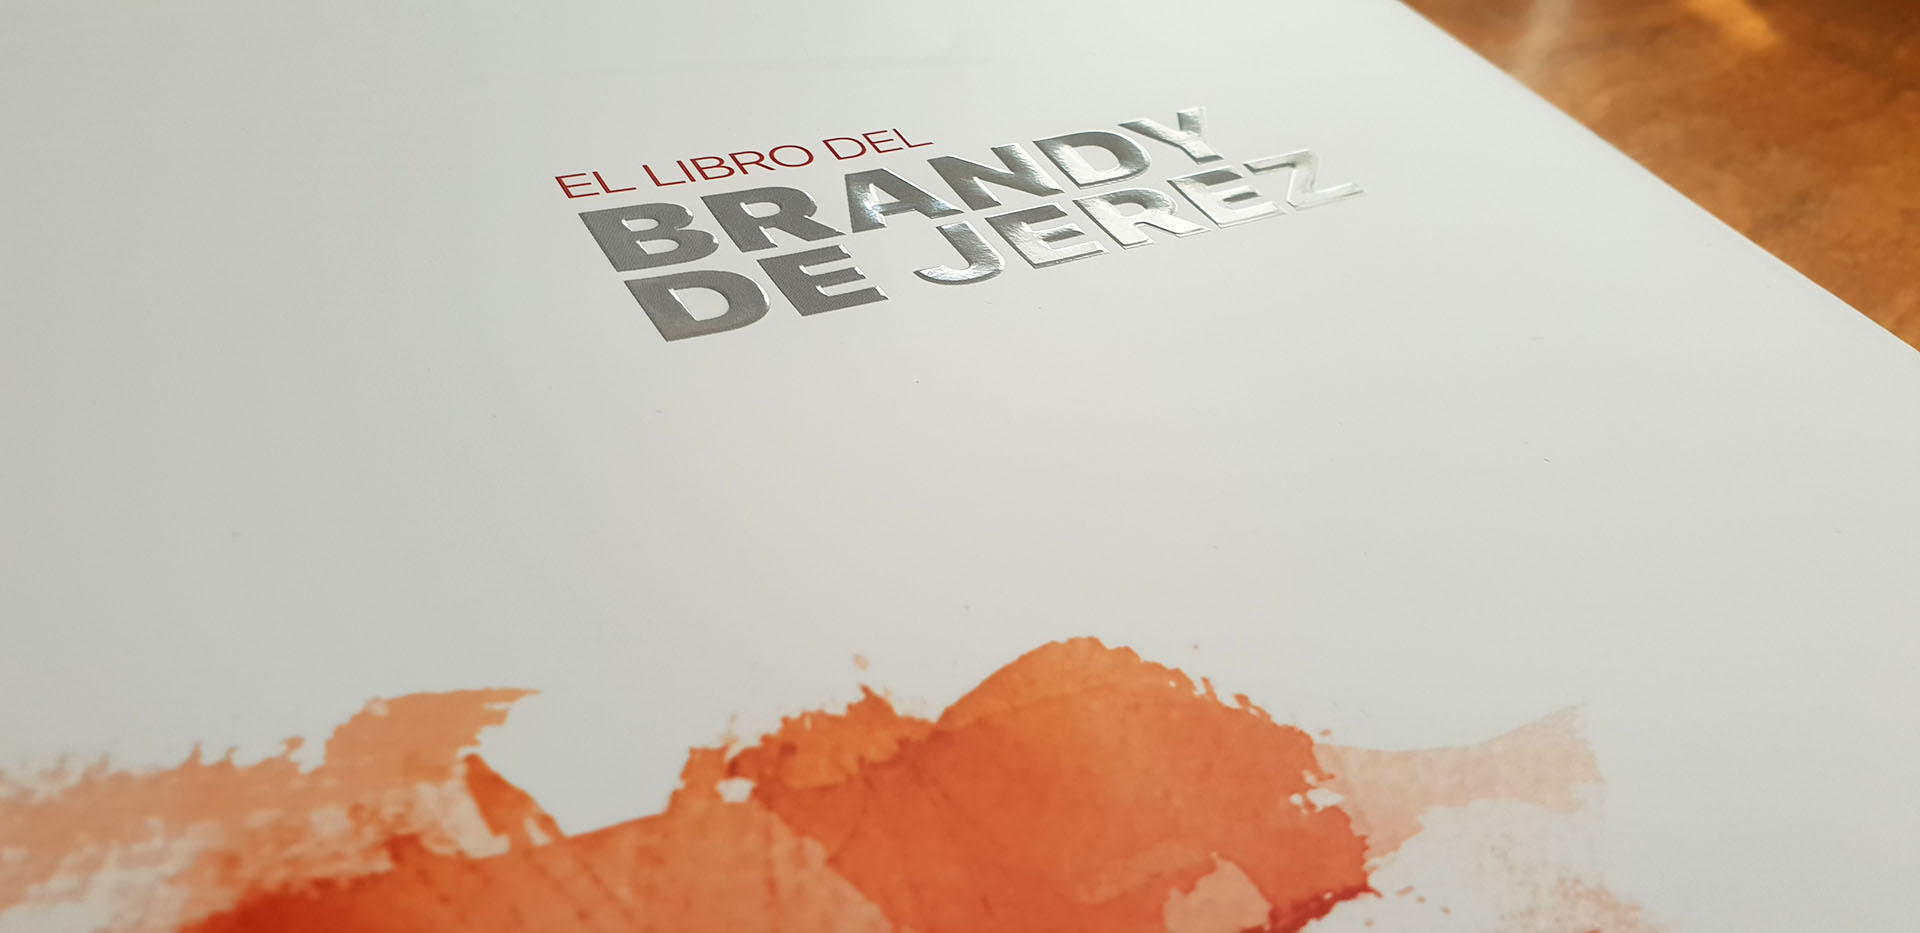 El Libro del Brandy de Jerez